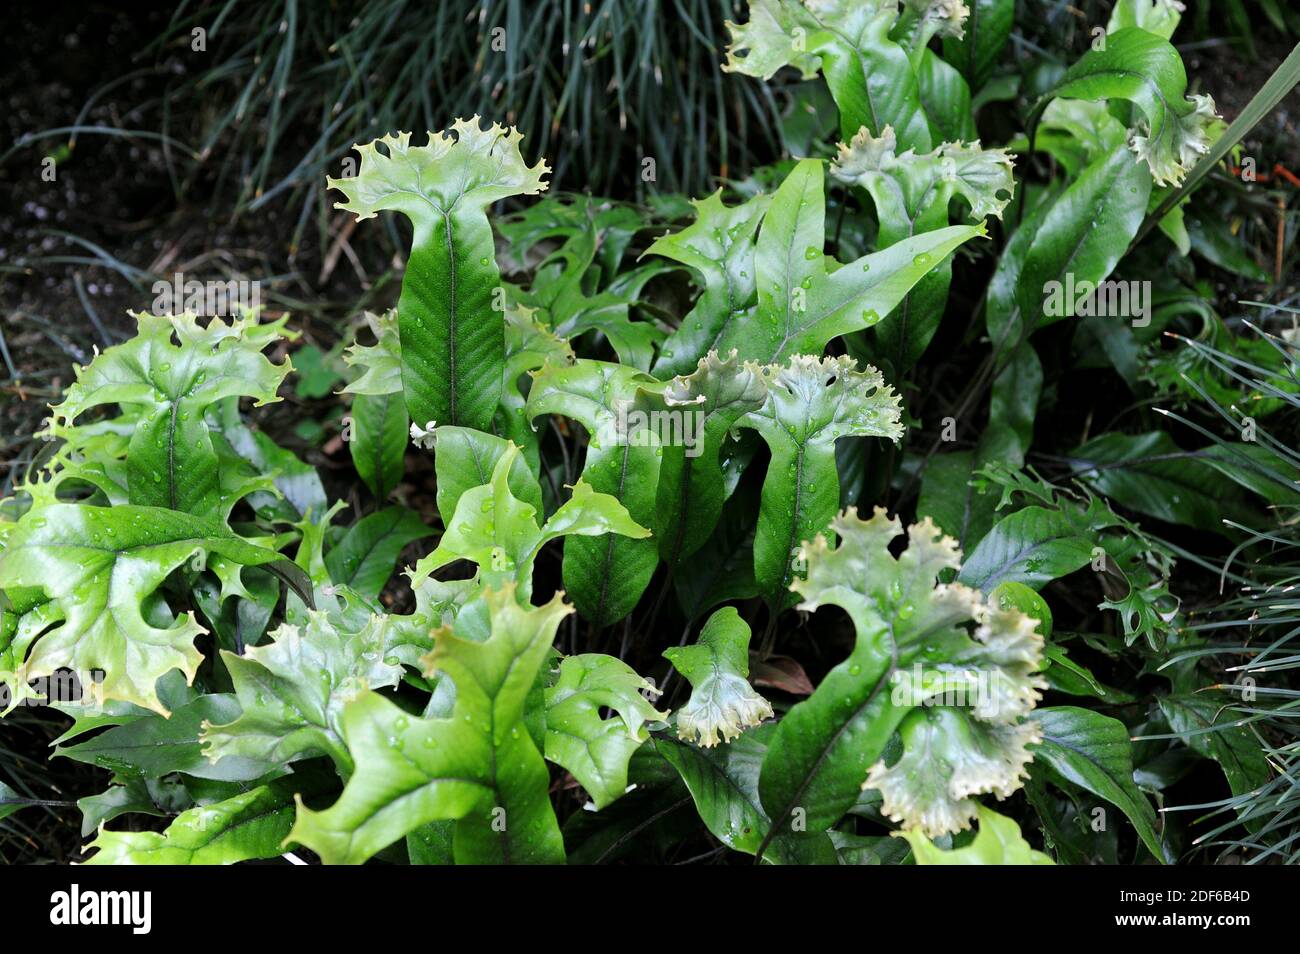 Pyrrosia lingua cristata ist ein ornamentaler epiphytischer Farn aus Asien. Pteridophyta. Polypodiaceae. Dieses Foto wurde in einem Garten aufgenommen. Stockfoto